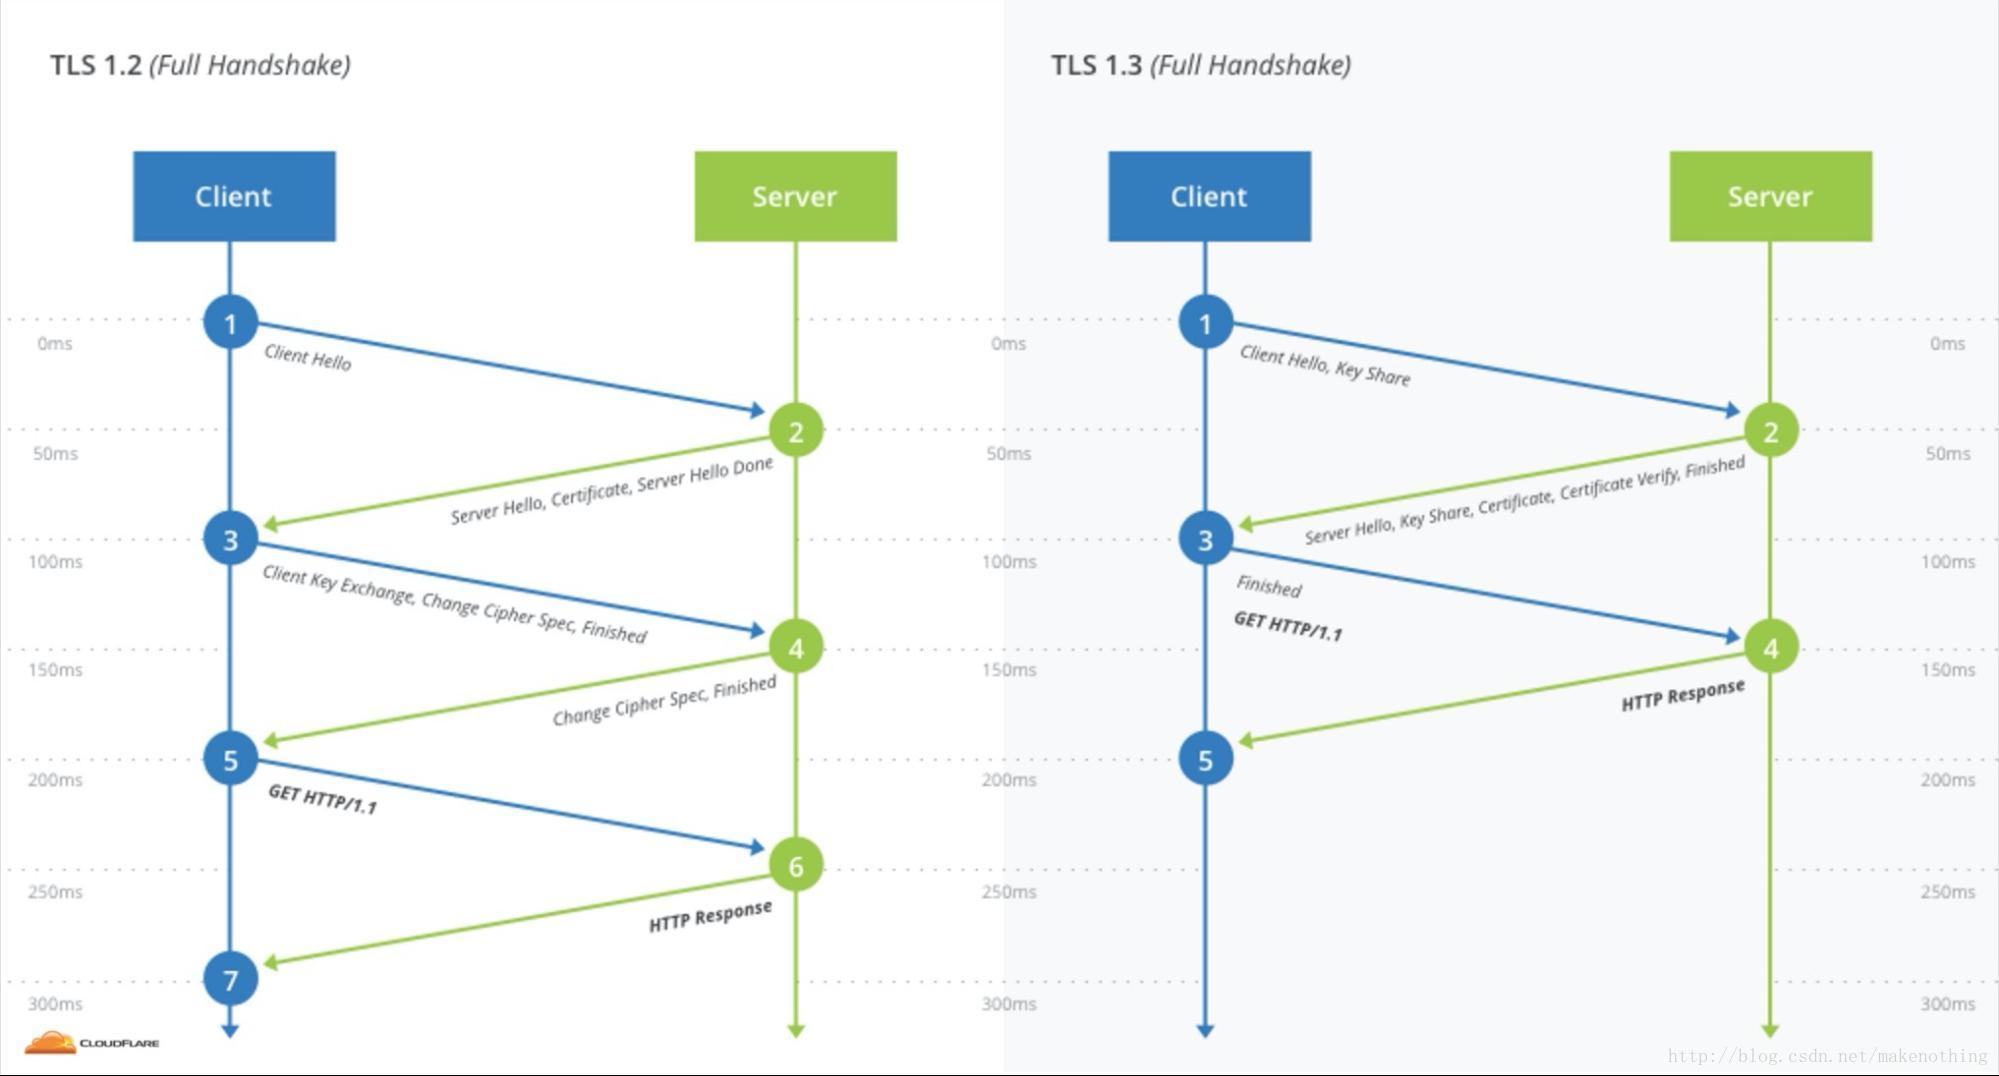 TLS 1.2 and TLS 1.3